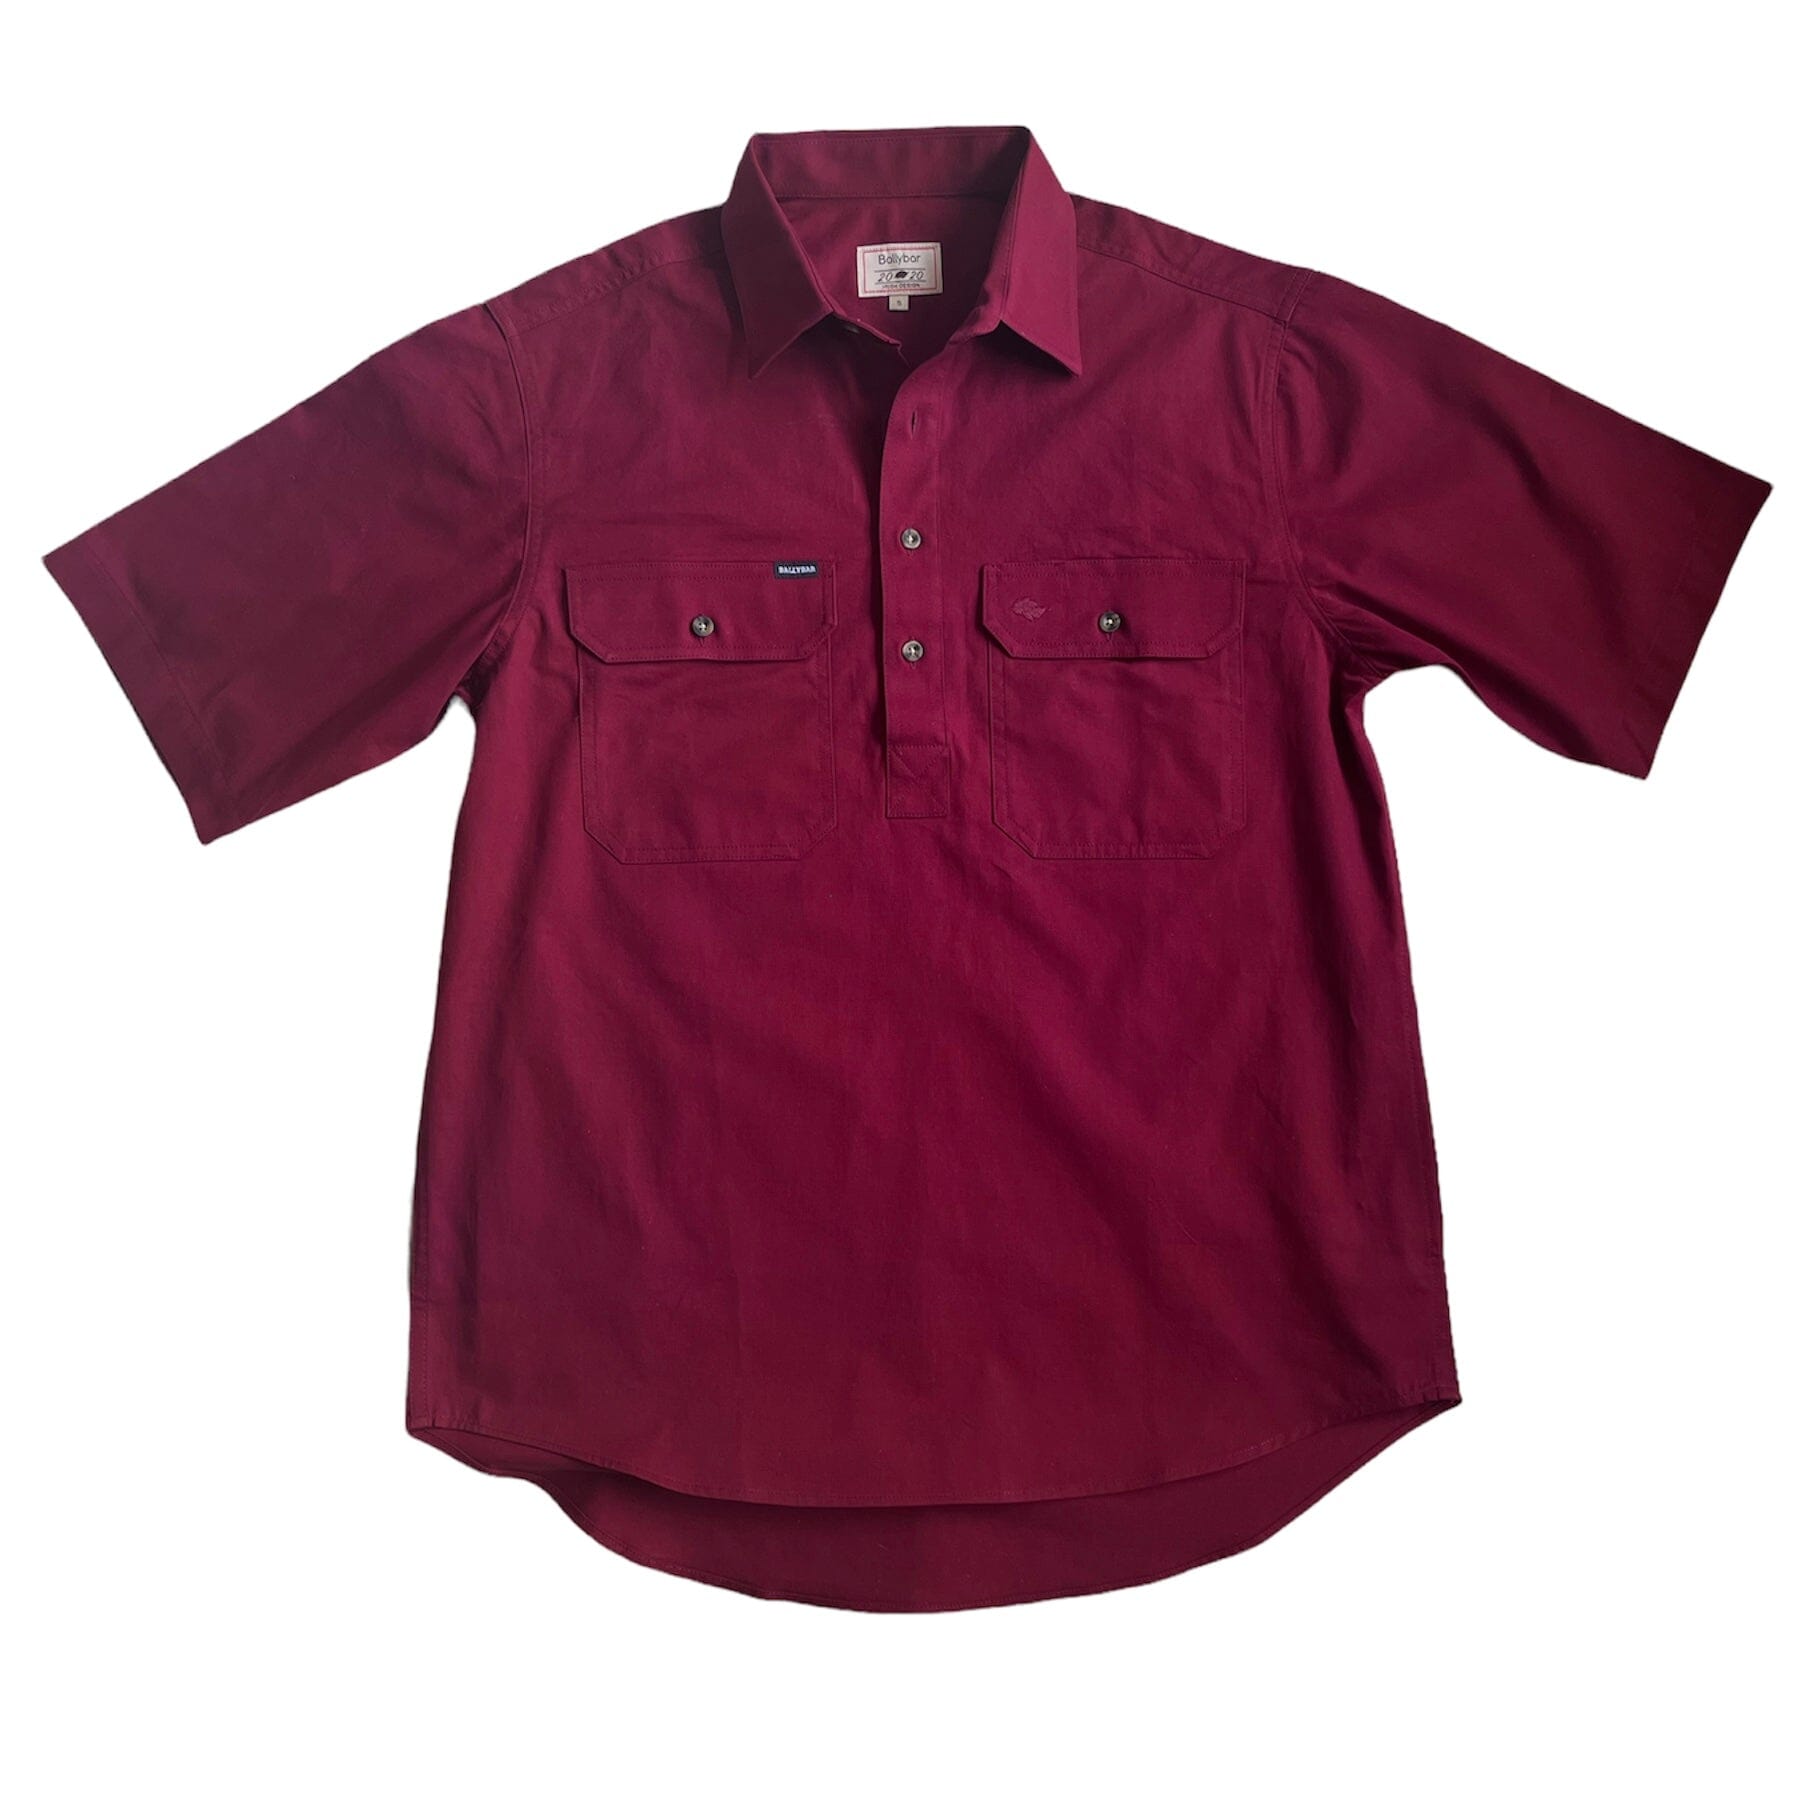 https://ballybarireland.com/cdn/shop/products/mens-country-cotton-work-shirt-short-sleeve-635223.jpg?v=1698925045&width=1946